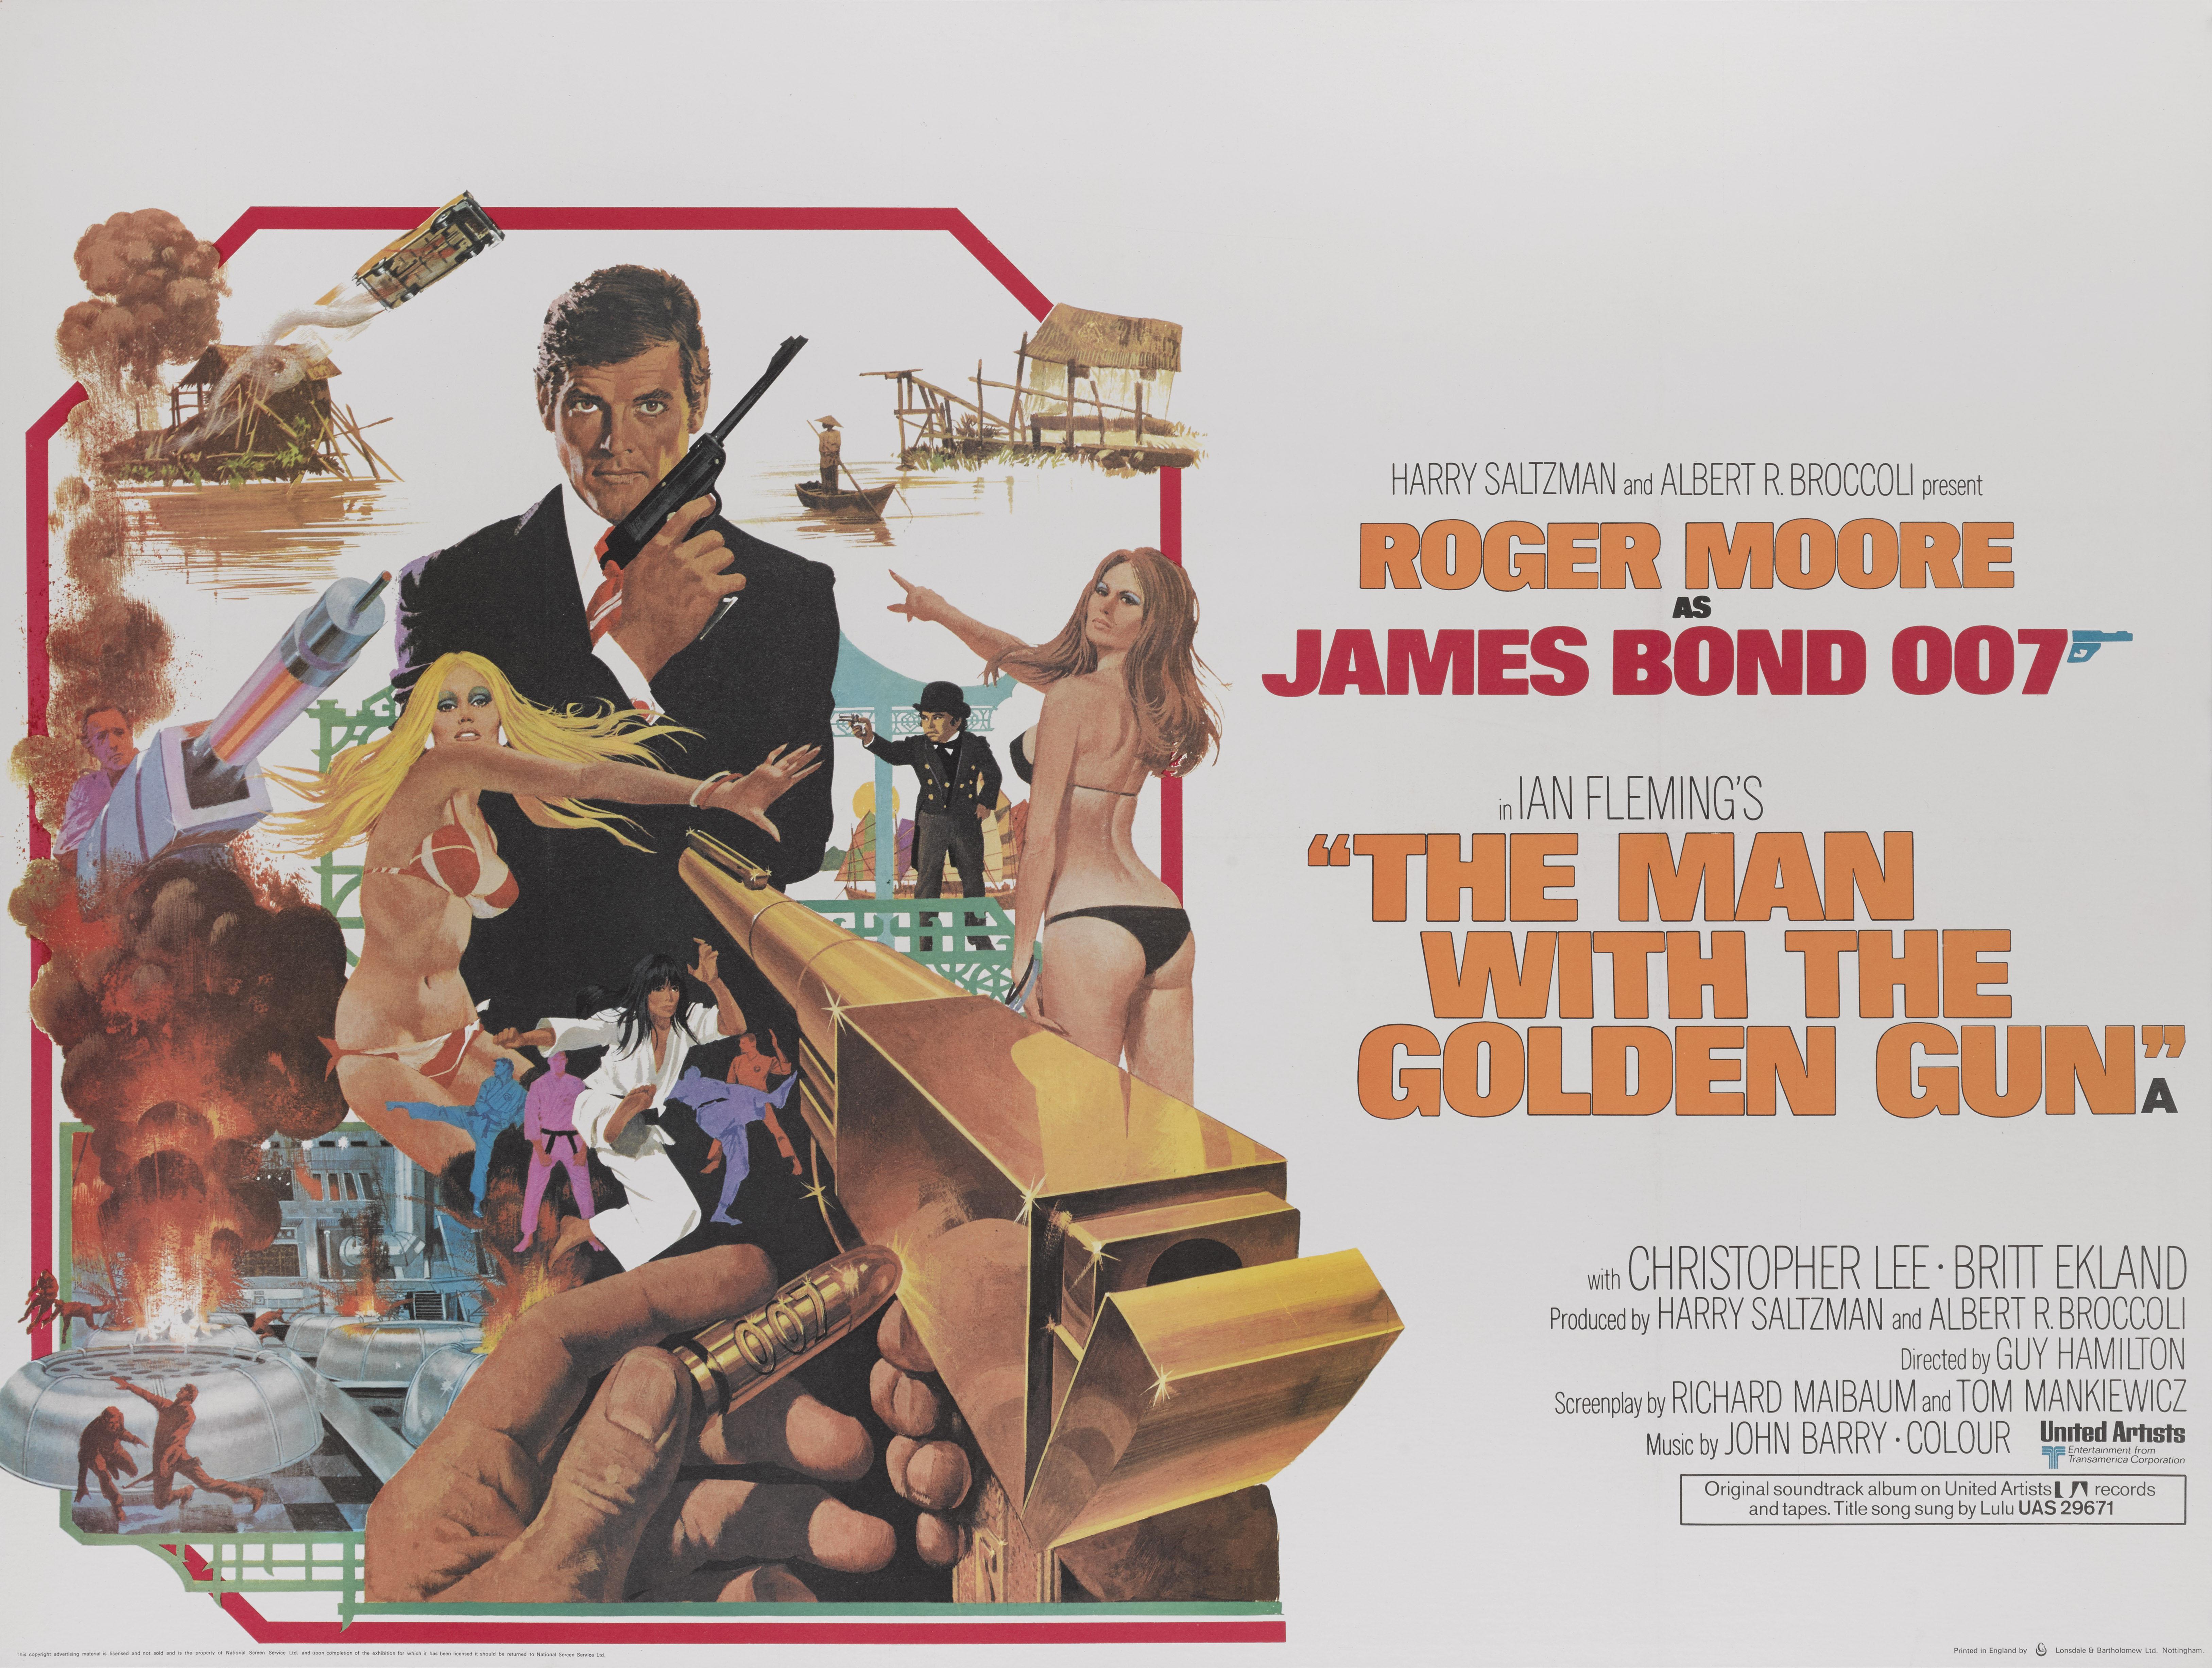 Original britisches Filmplakat für den 1974 erschienenen „The Man with the Golden Gun“.
Dies ist das zweite Mal, dass Roger Moore James Bond spielte, und das vierte und letzte Mal, dass Guy Hamilton einen Bond-Film drehen sollte. Christopher Lee